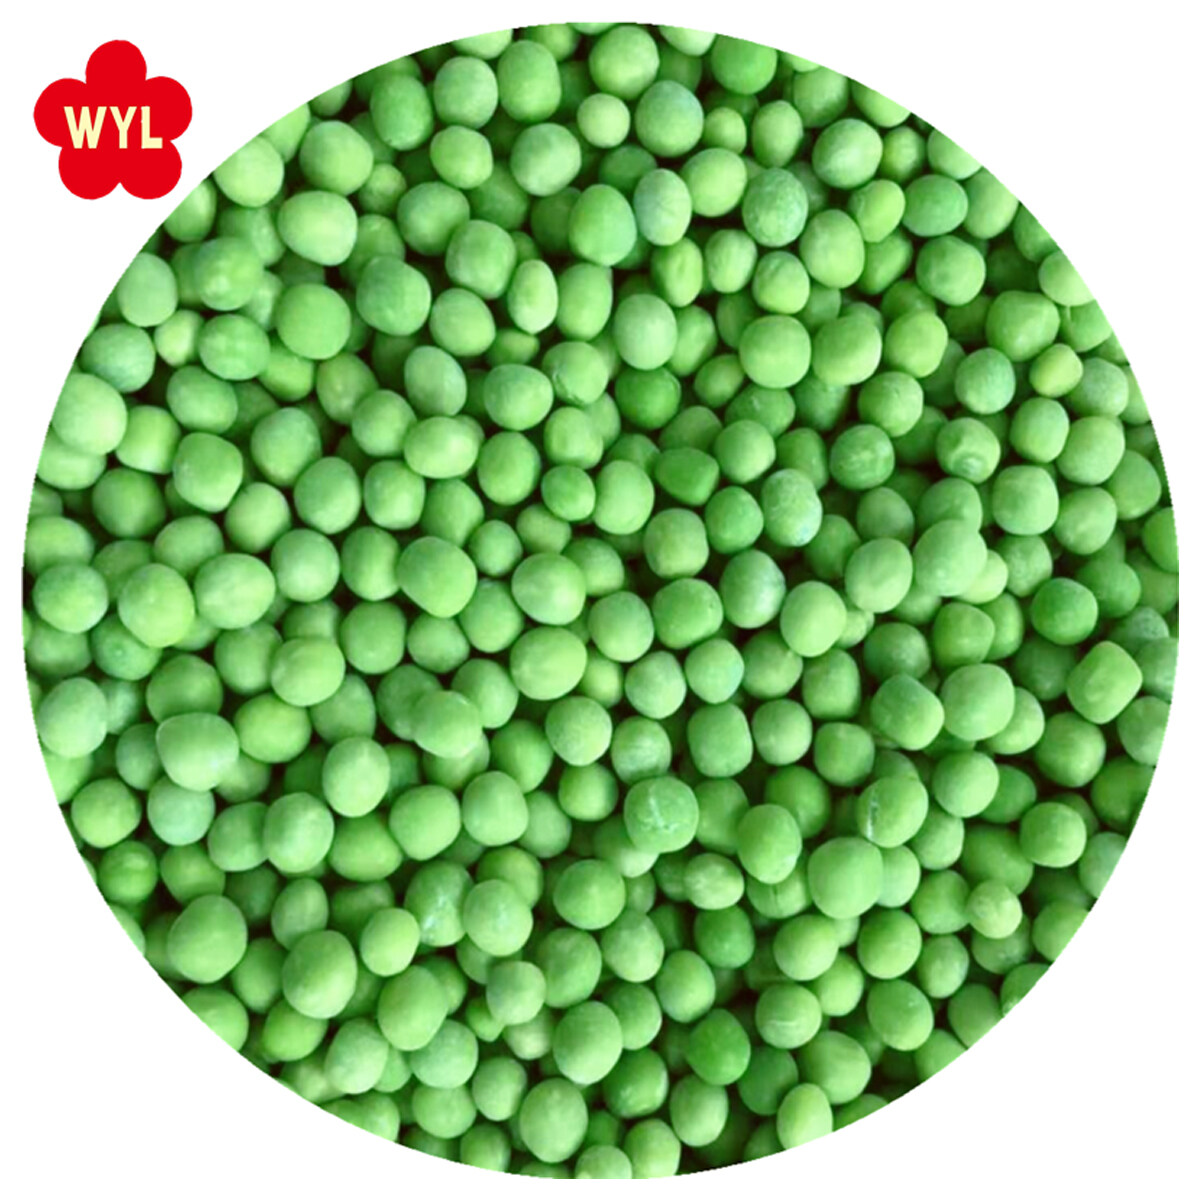 Marcas de ervilhas verdes congeladas Variedade Um pacote de granel verde típico de grau